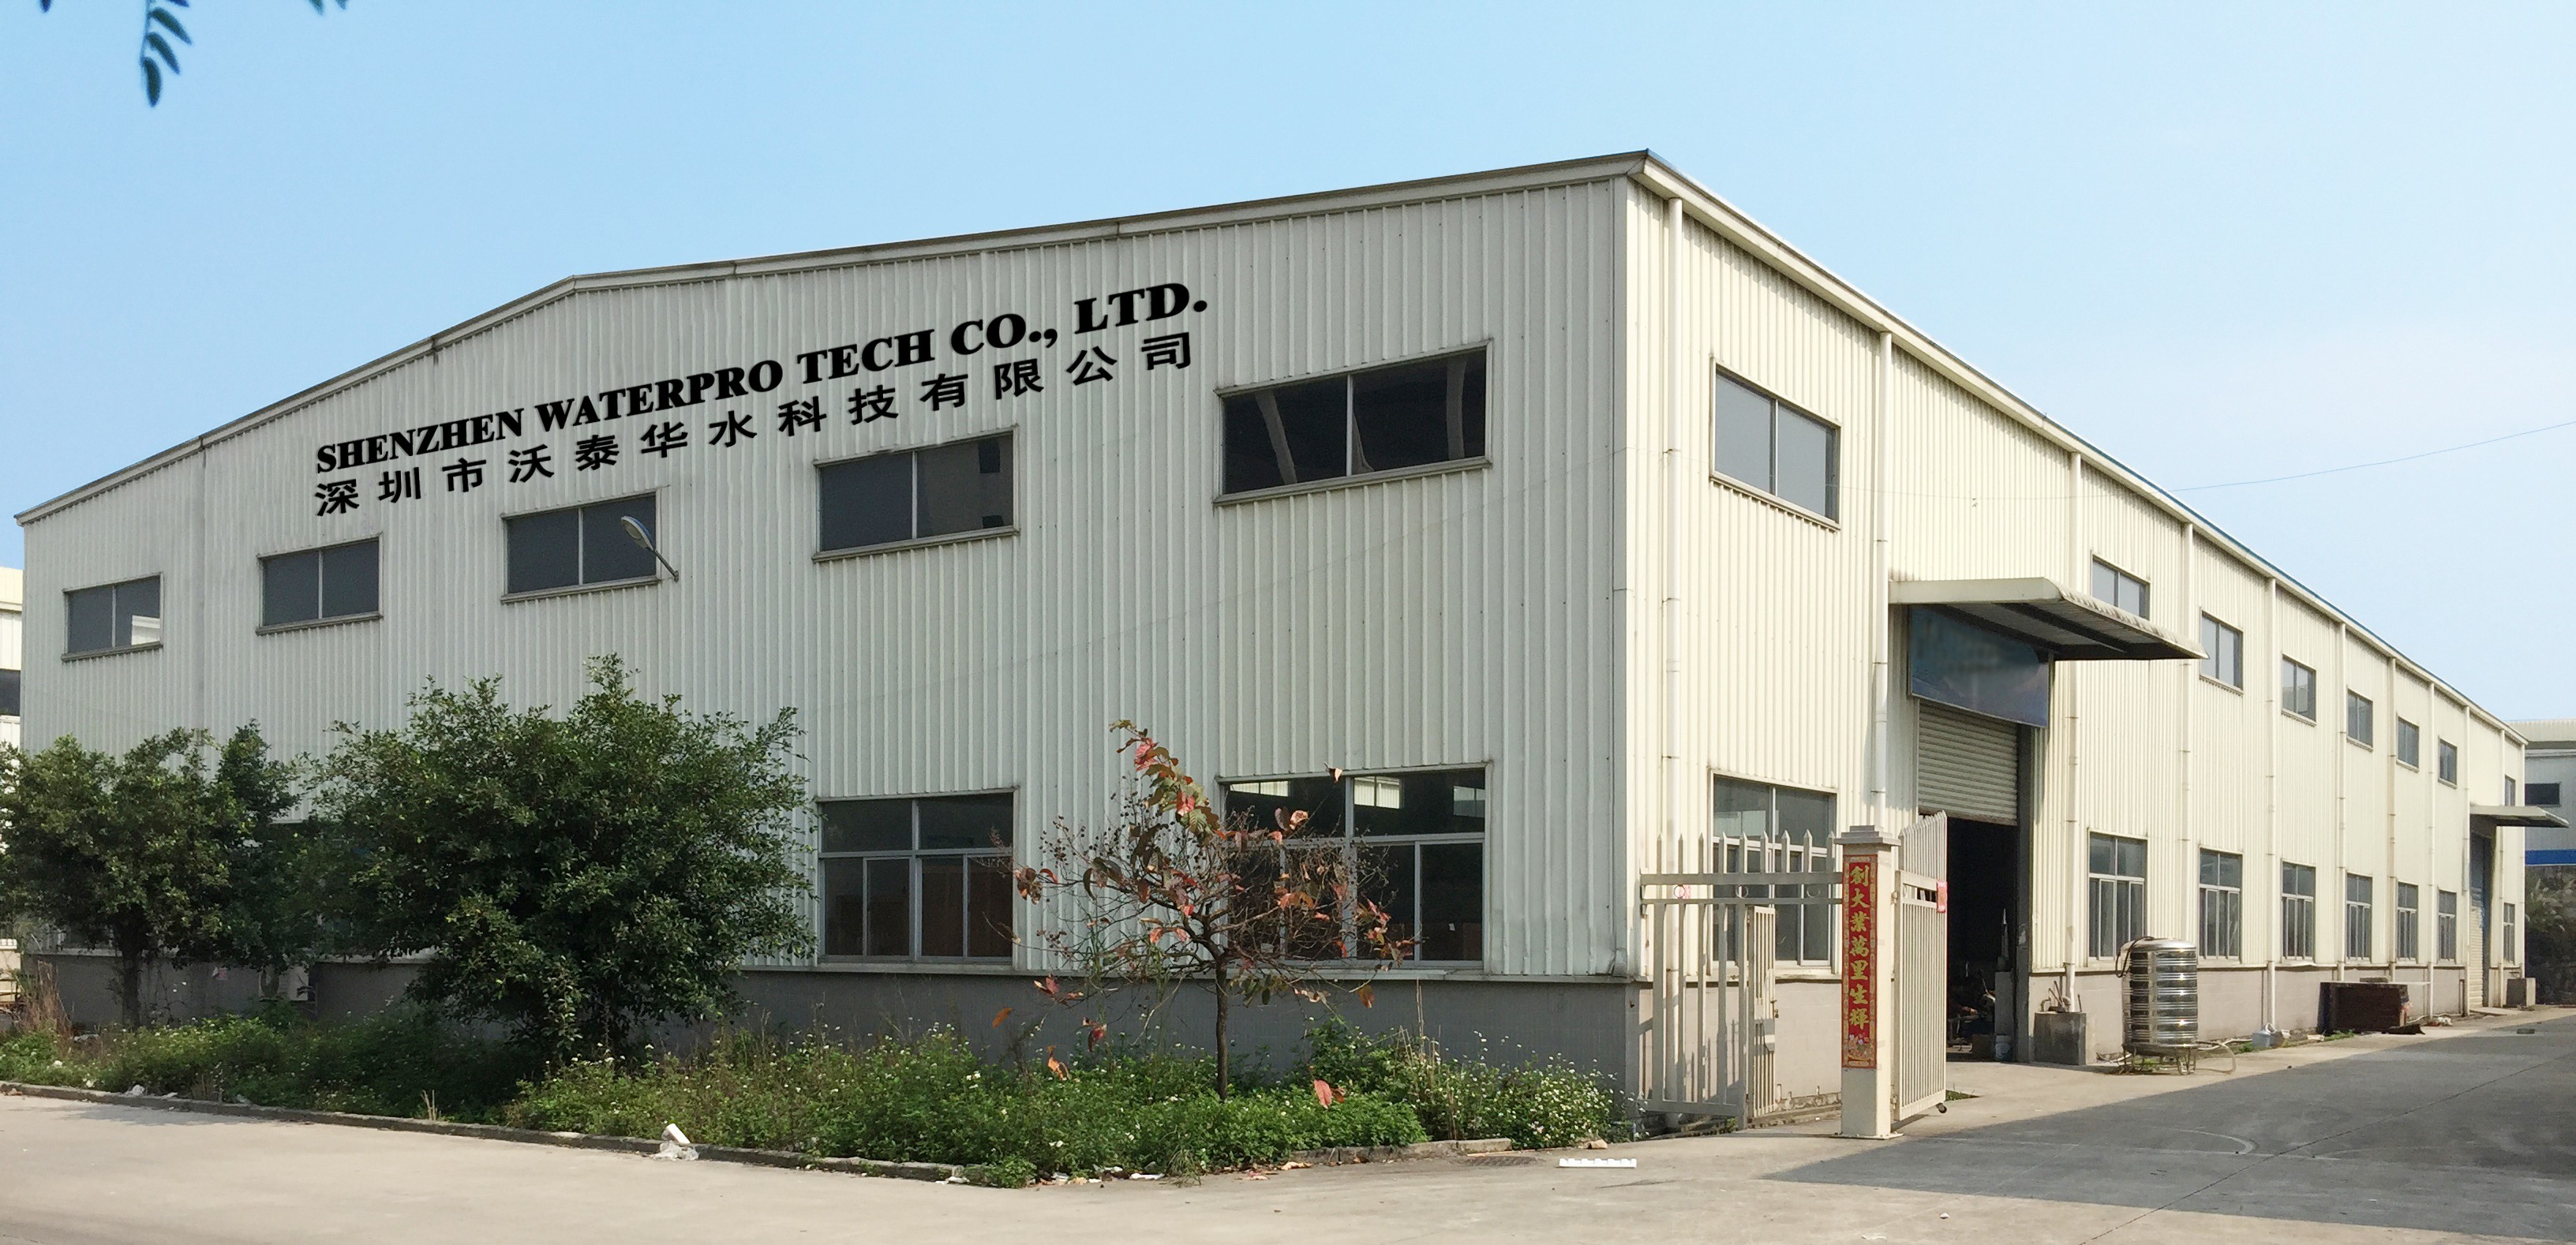 Shenzhen Waterpro Tech Co., Ltd.